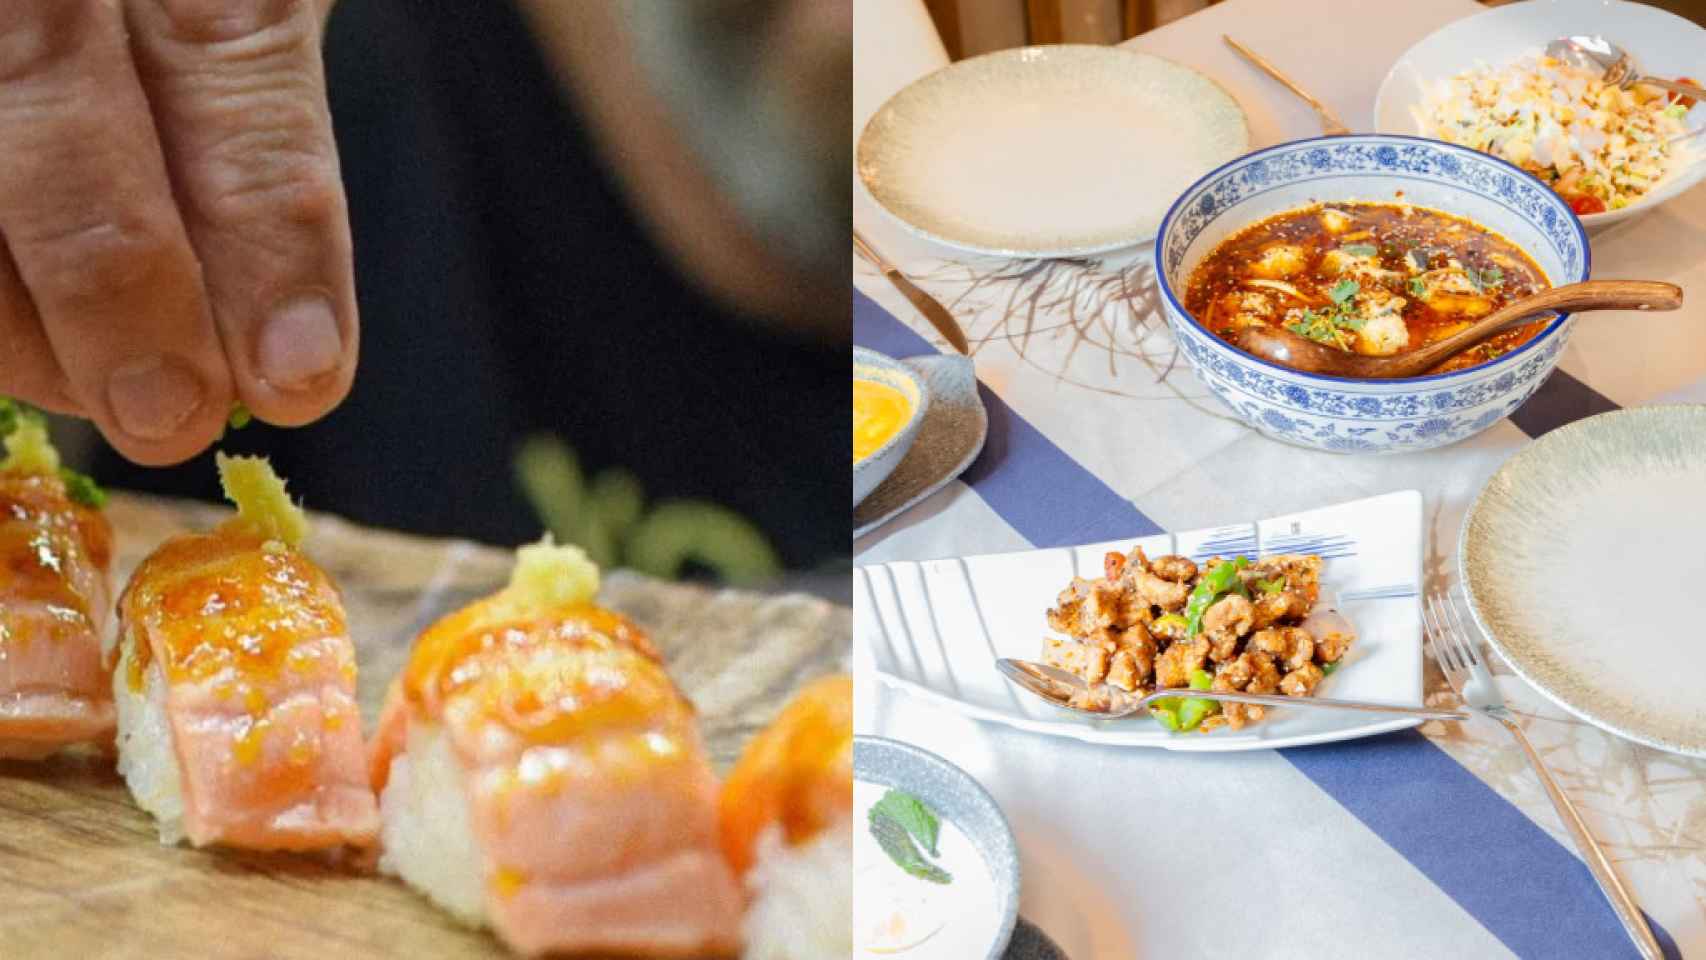 Kodama Alicante y Jávea Casa Lili, dos de los restaurantes de comida asiática más buscados.